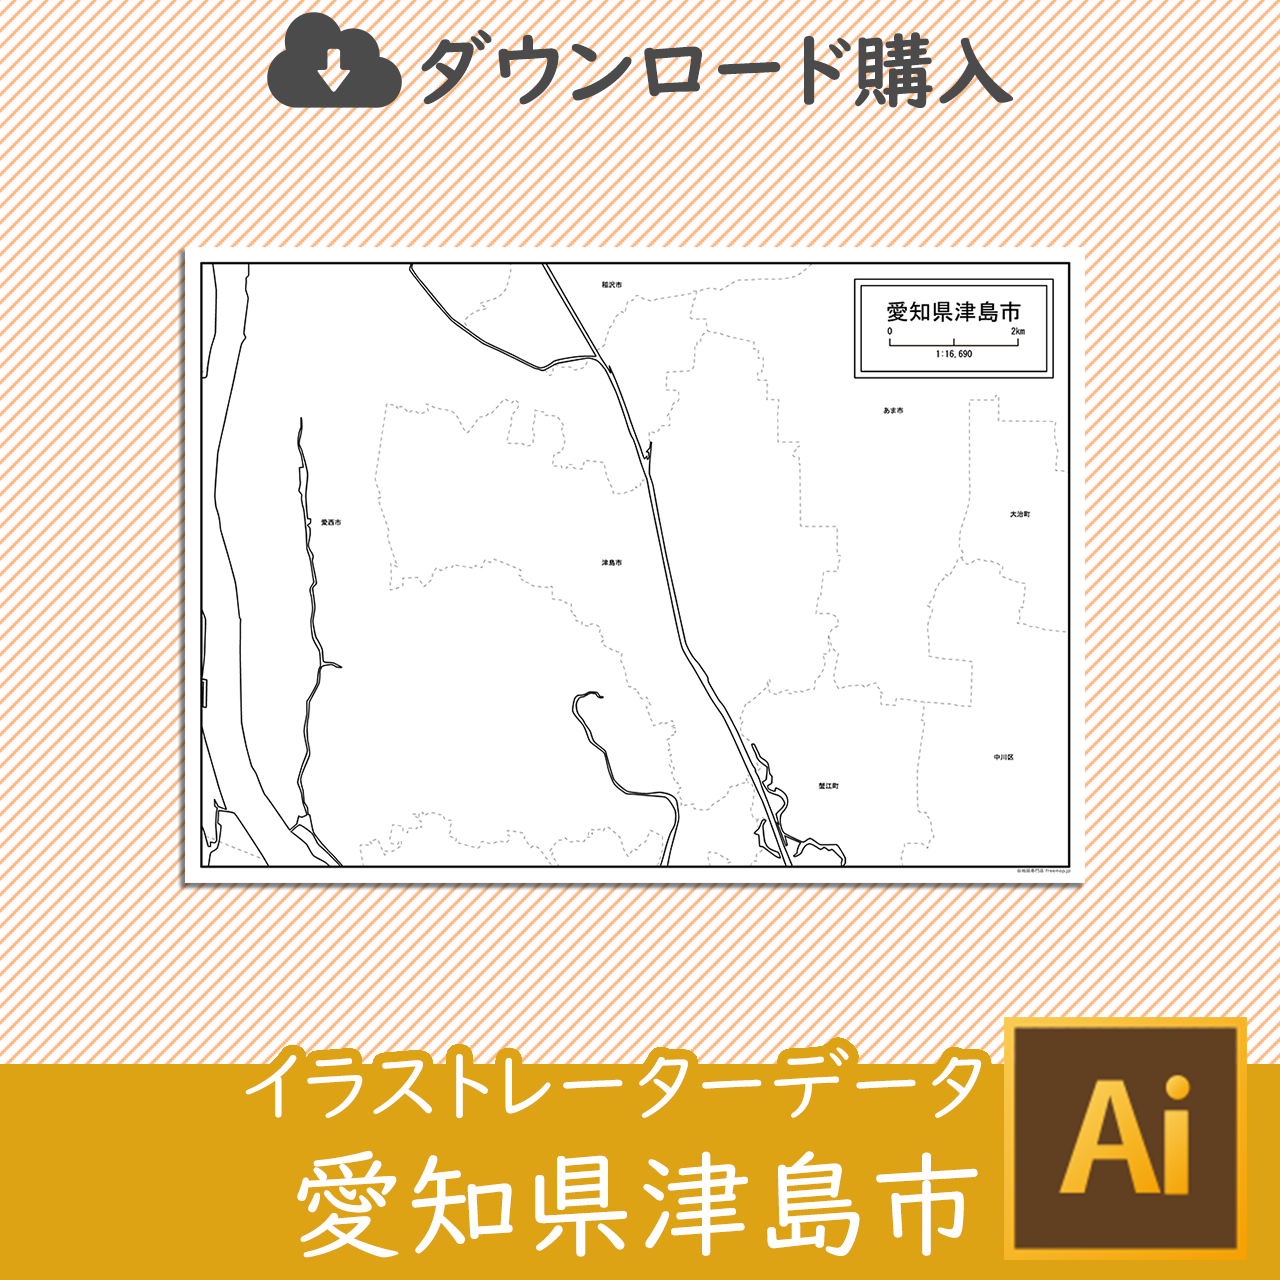 津島市の白地図のサムネイル